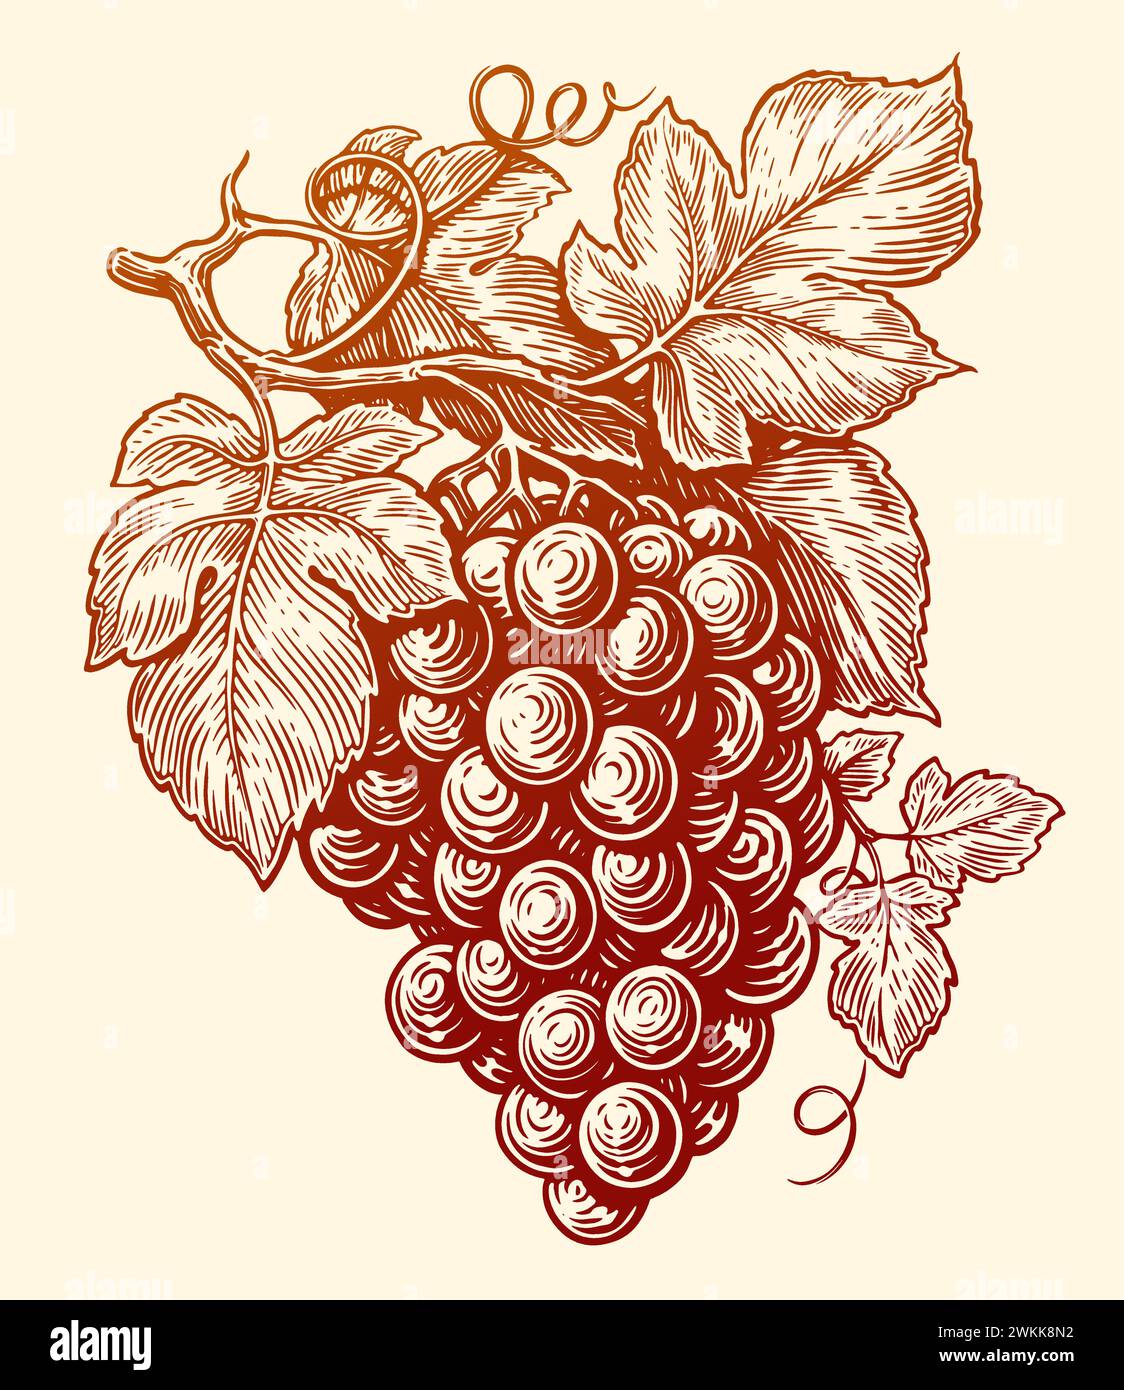 Handgezogener Zweig der Weinrebe mit Blättern. Weinpflanze, Gravur Vektor Illustration Stock Vektor